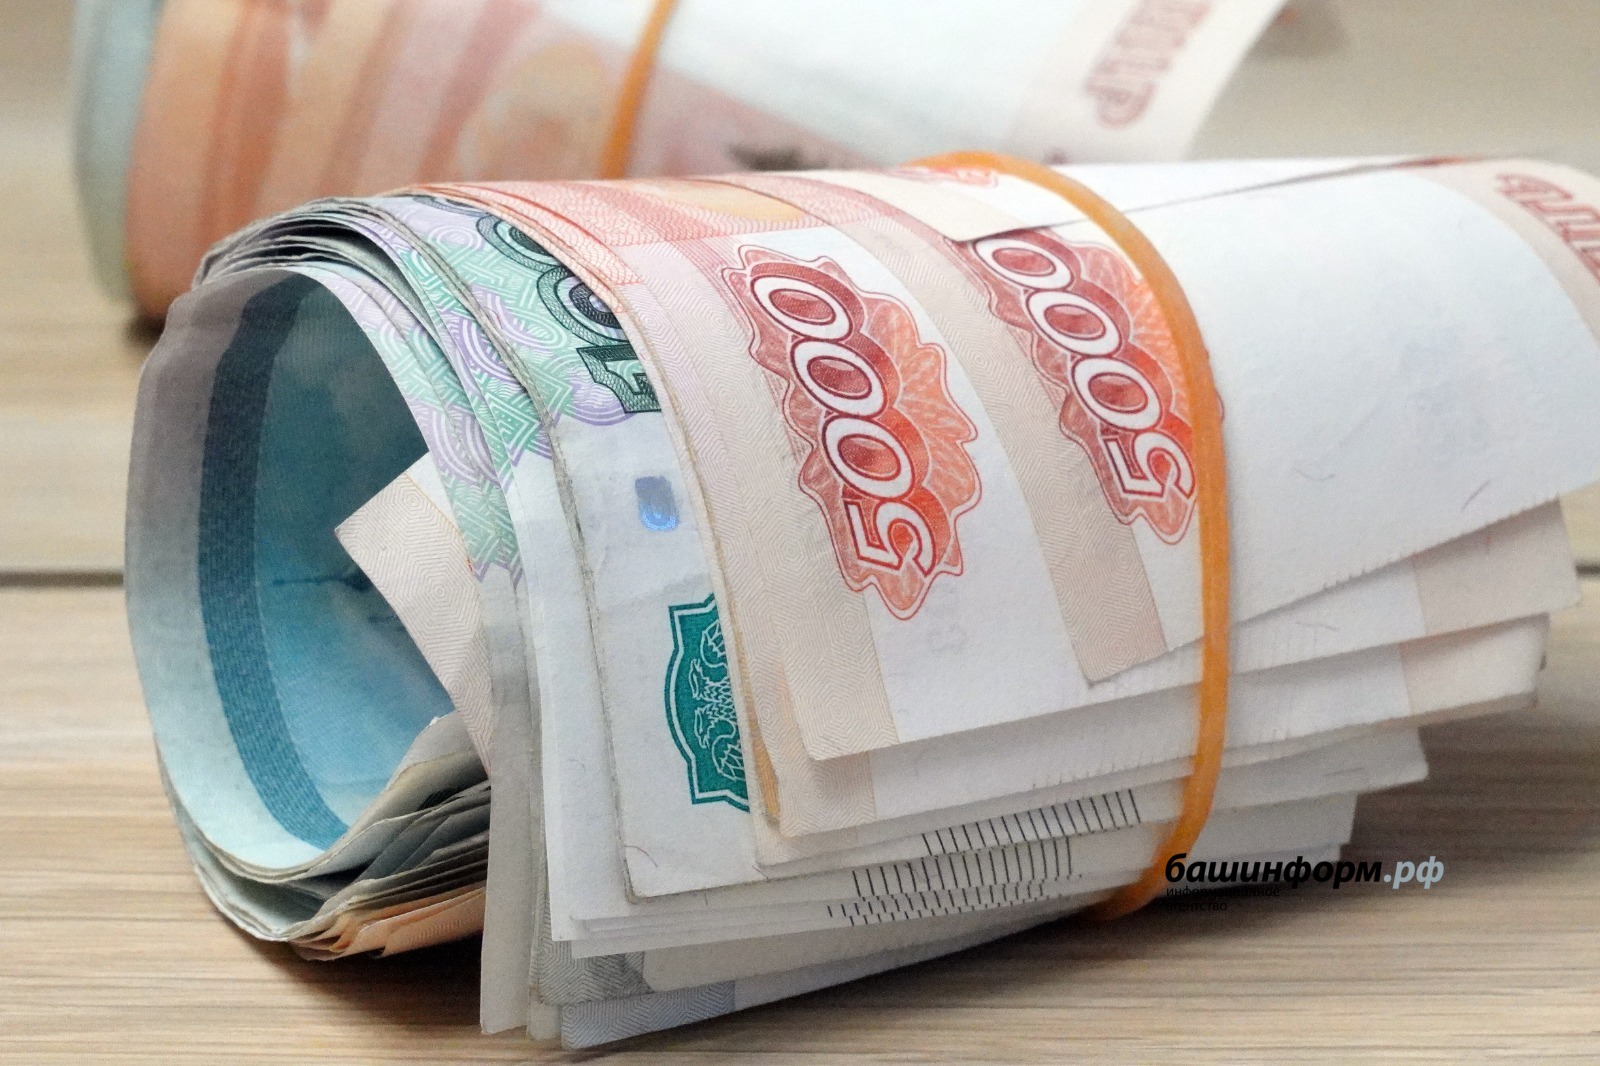 В Башкортостане предприниматели могут получить новый льготный кредит до 10 млн рублей без залога